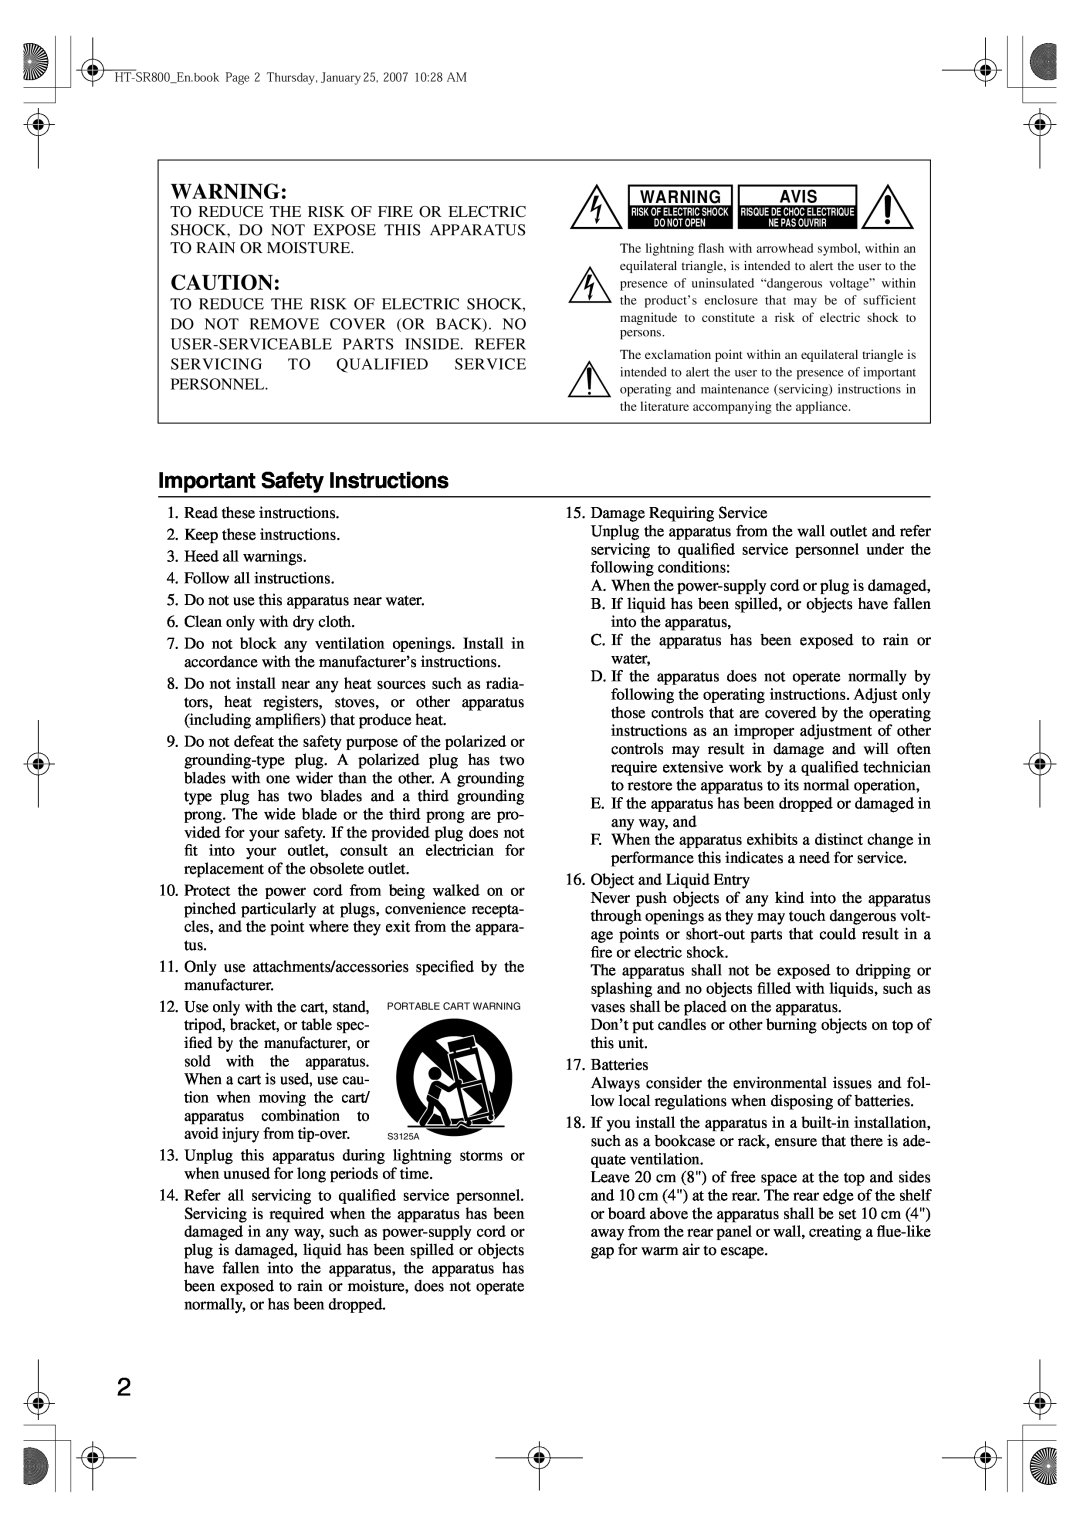 Onkyo HT-SR800 instruction manual Important Safety Instructions, Avis 